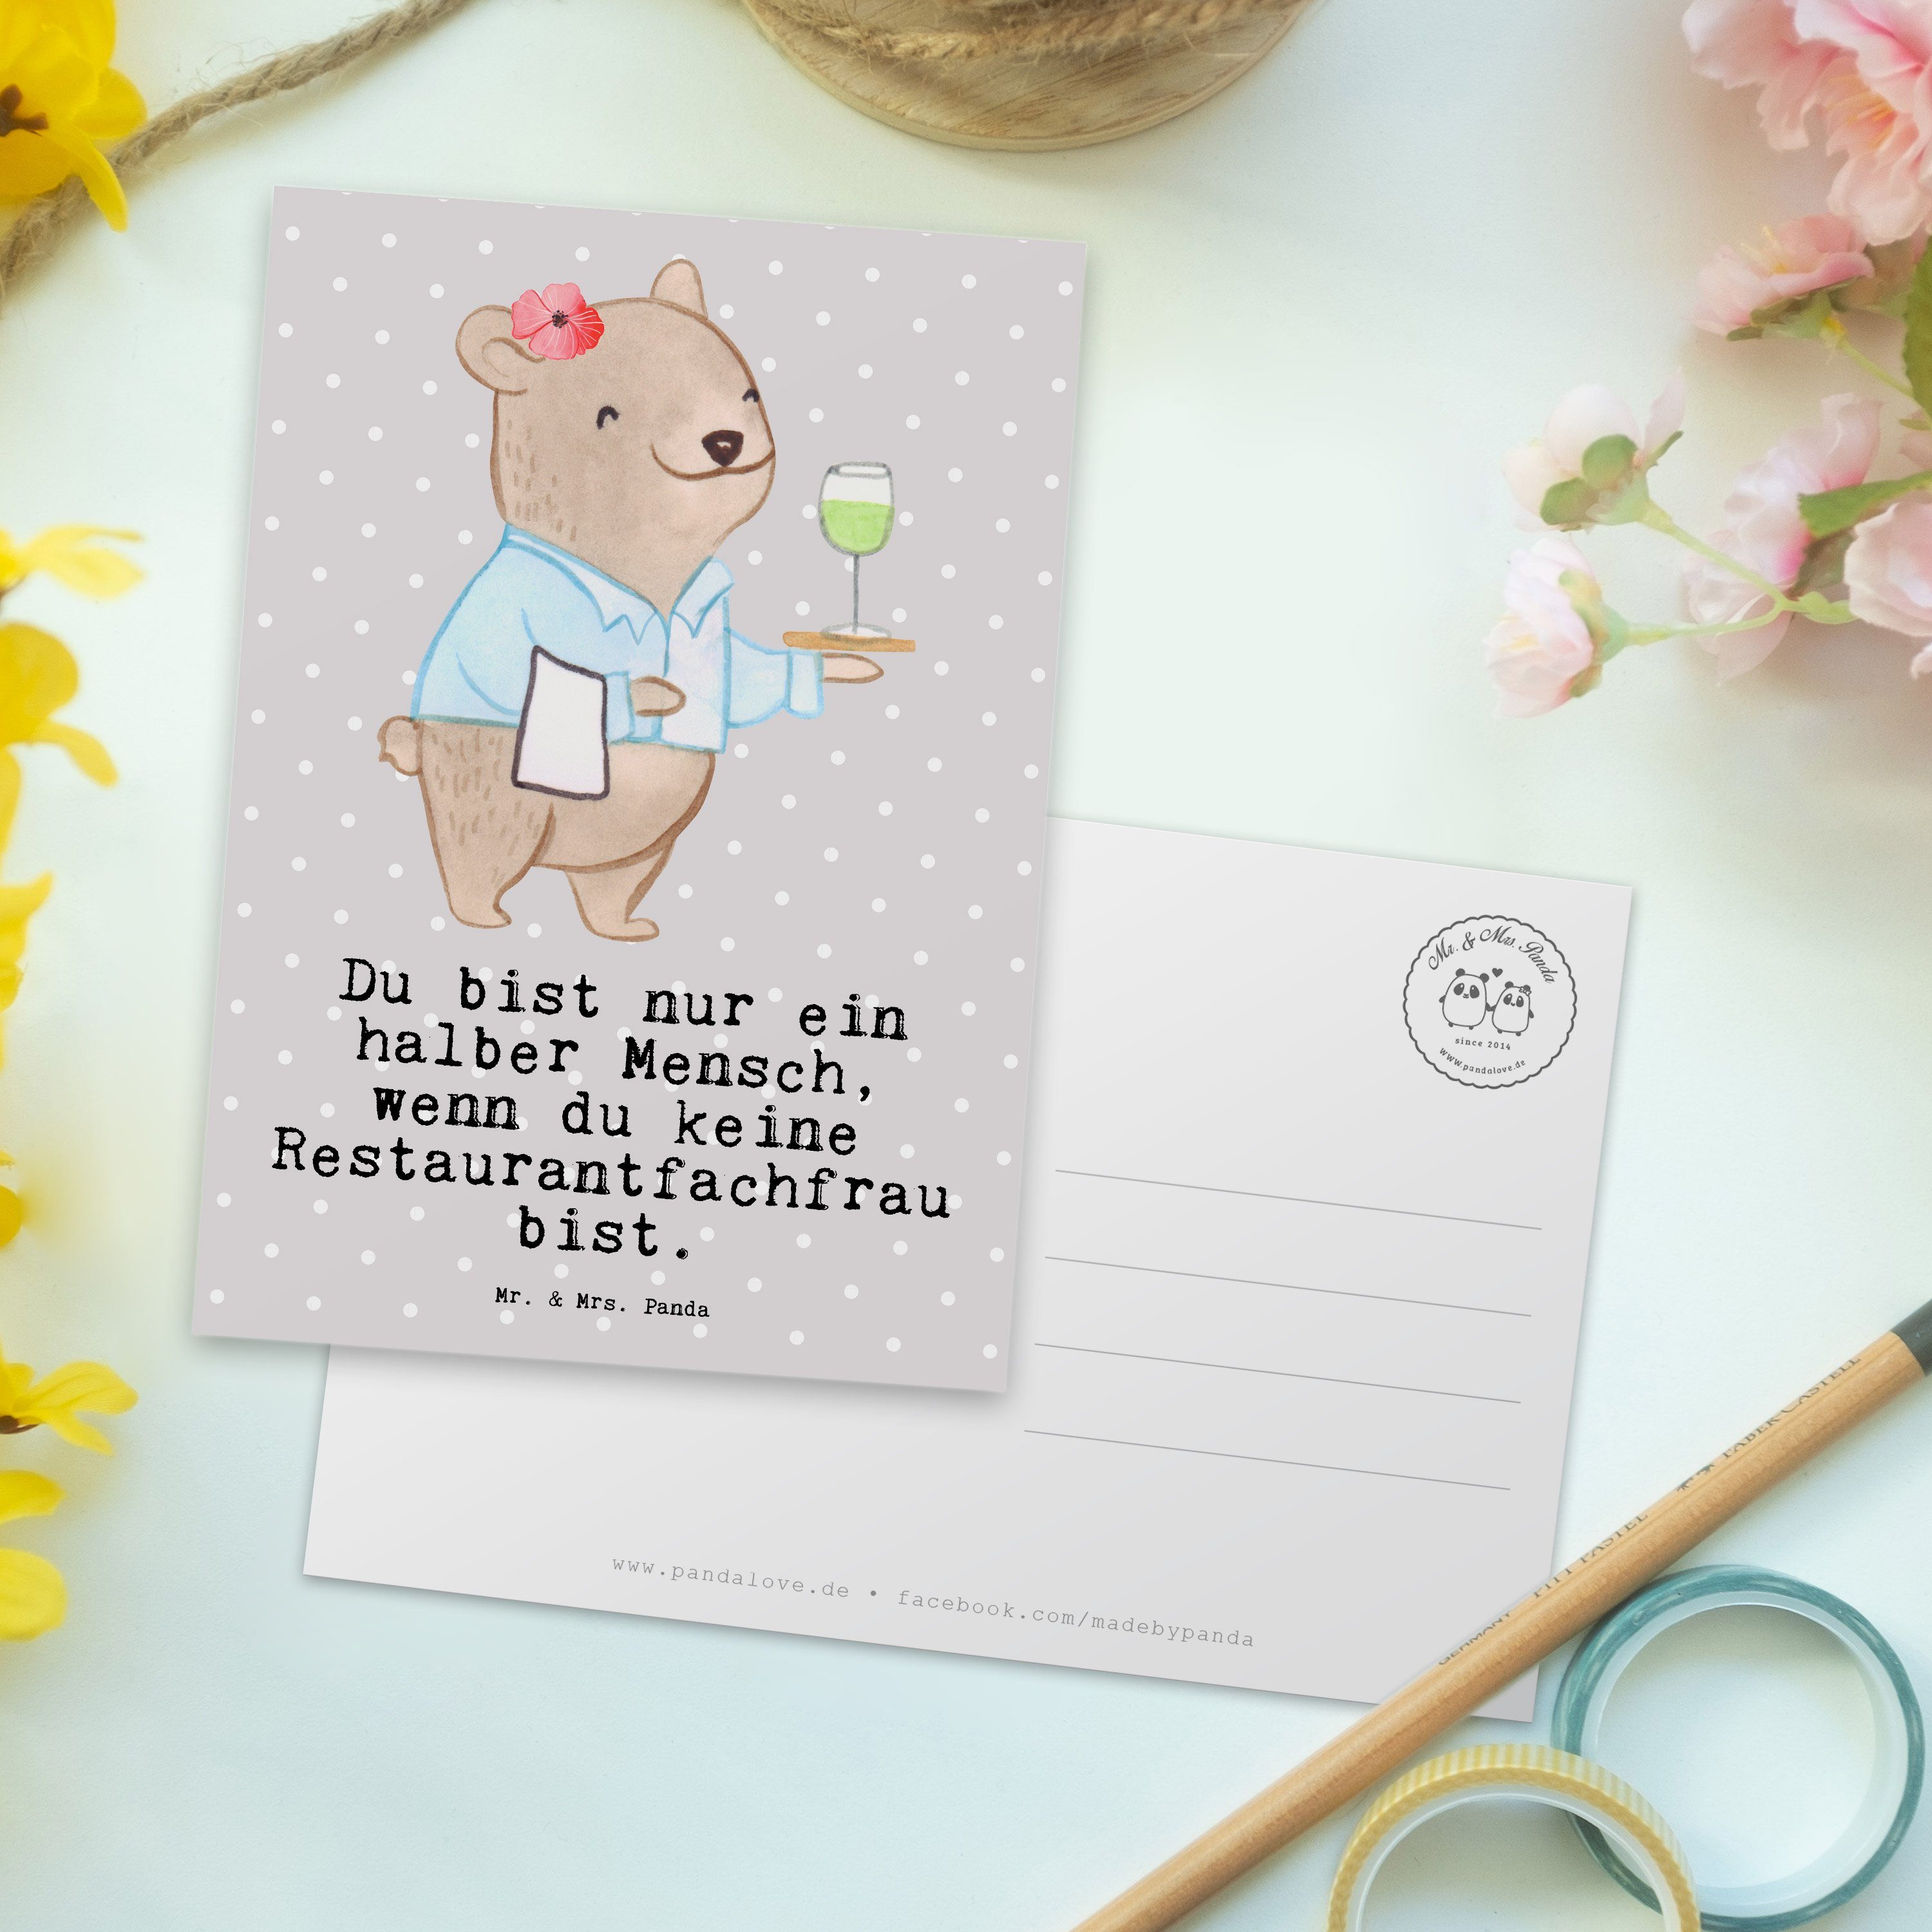 Mr. & Mrs. Panda Postkarte Restaurantfachfrau mit Herz - Grau Pastell - Geschenk, Dankeschön, Au